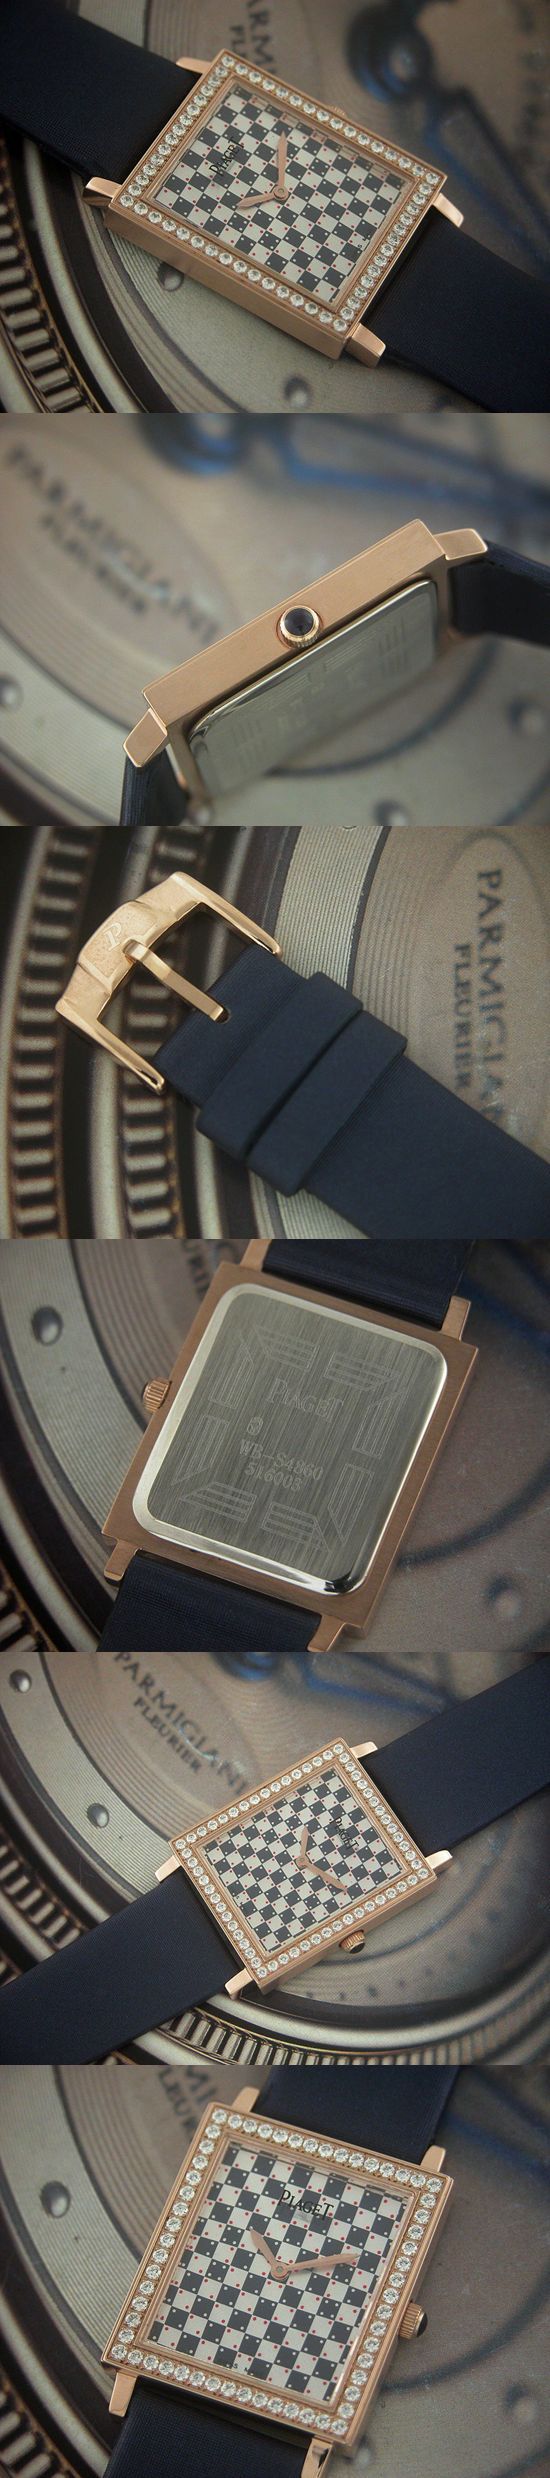 おしゃれなブランド時計がピアジェ-アルティプラノ-PIAGET-PI00003J-女性用を提供します.